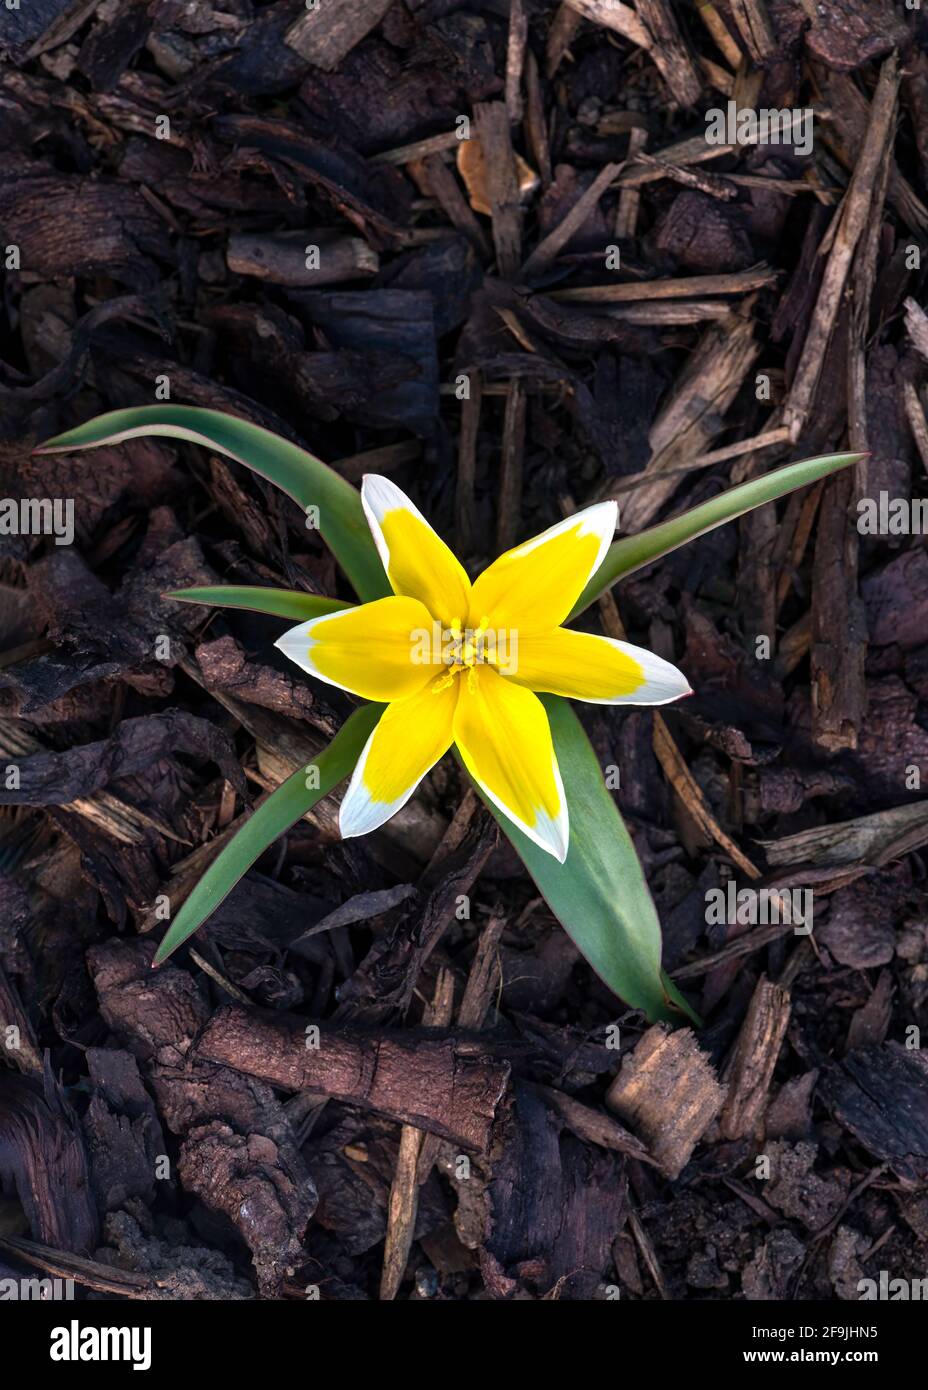 Nahaufnahme eines lebhaften tulipa tarda eine gelbe und weiße sternförmige Blütenart der Tulpe, auf einem Holzchip-Hintergrund für Text-Overlay Stockfoto